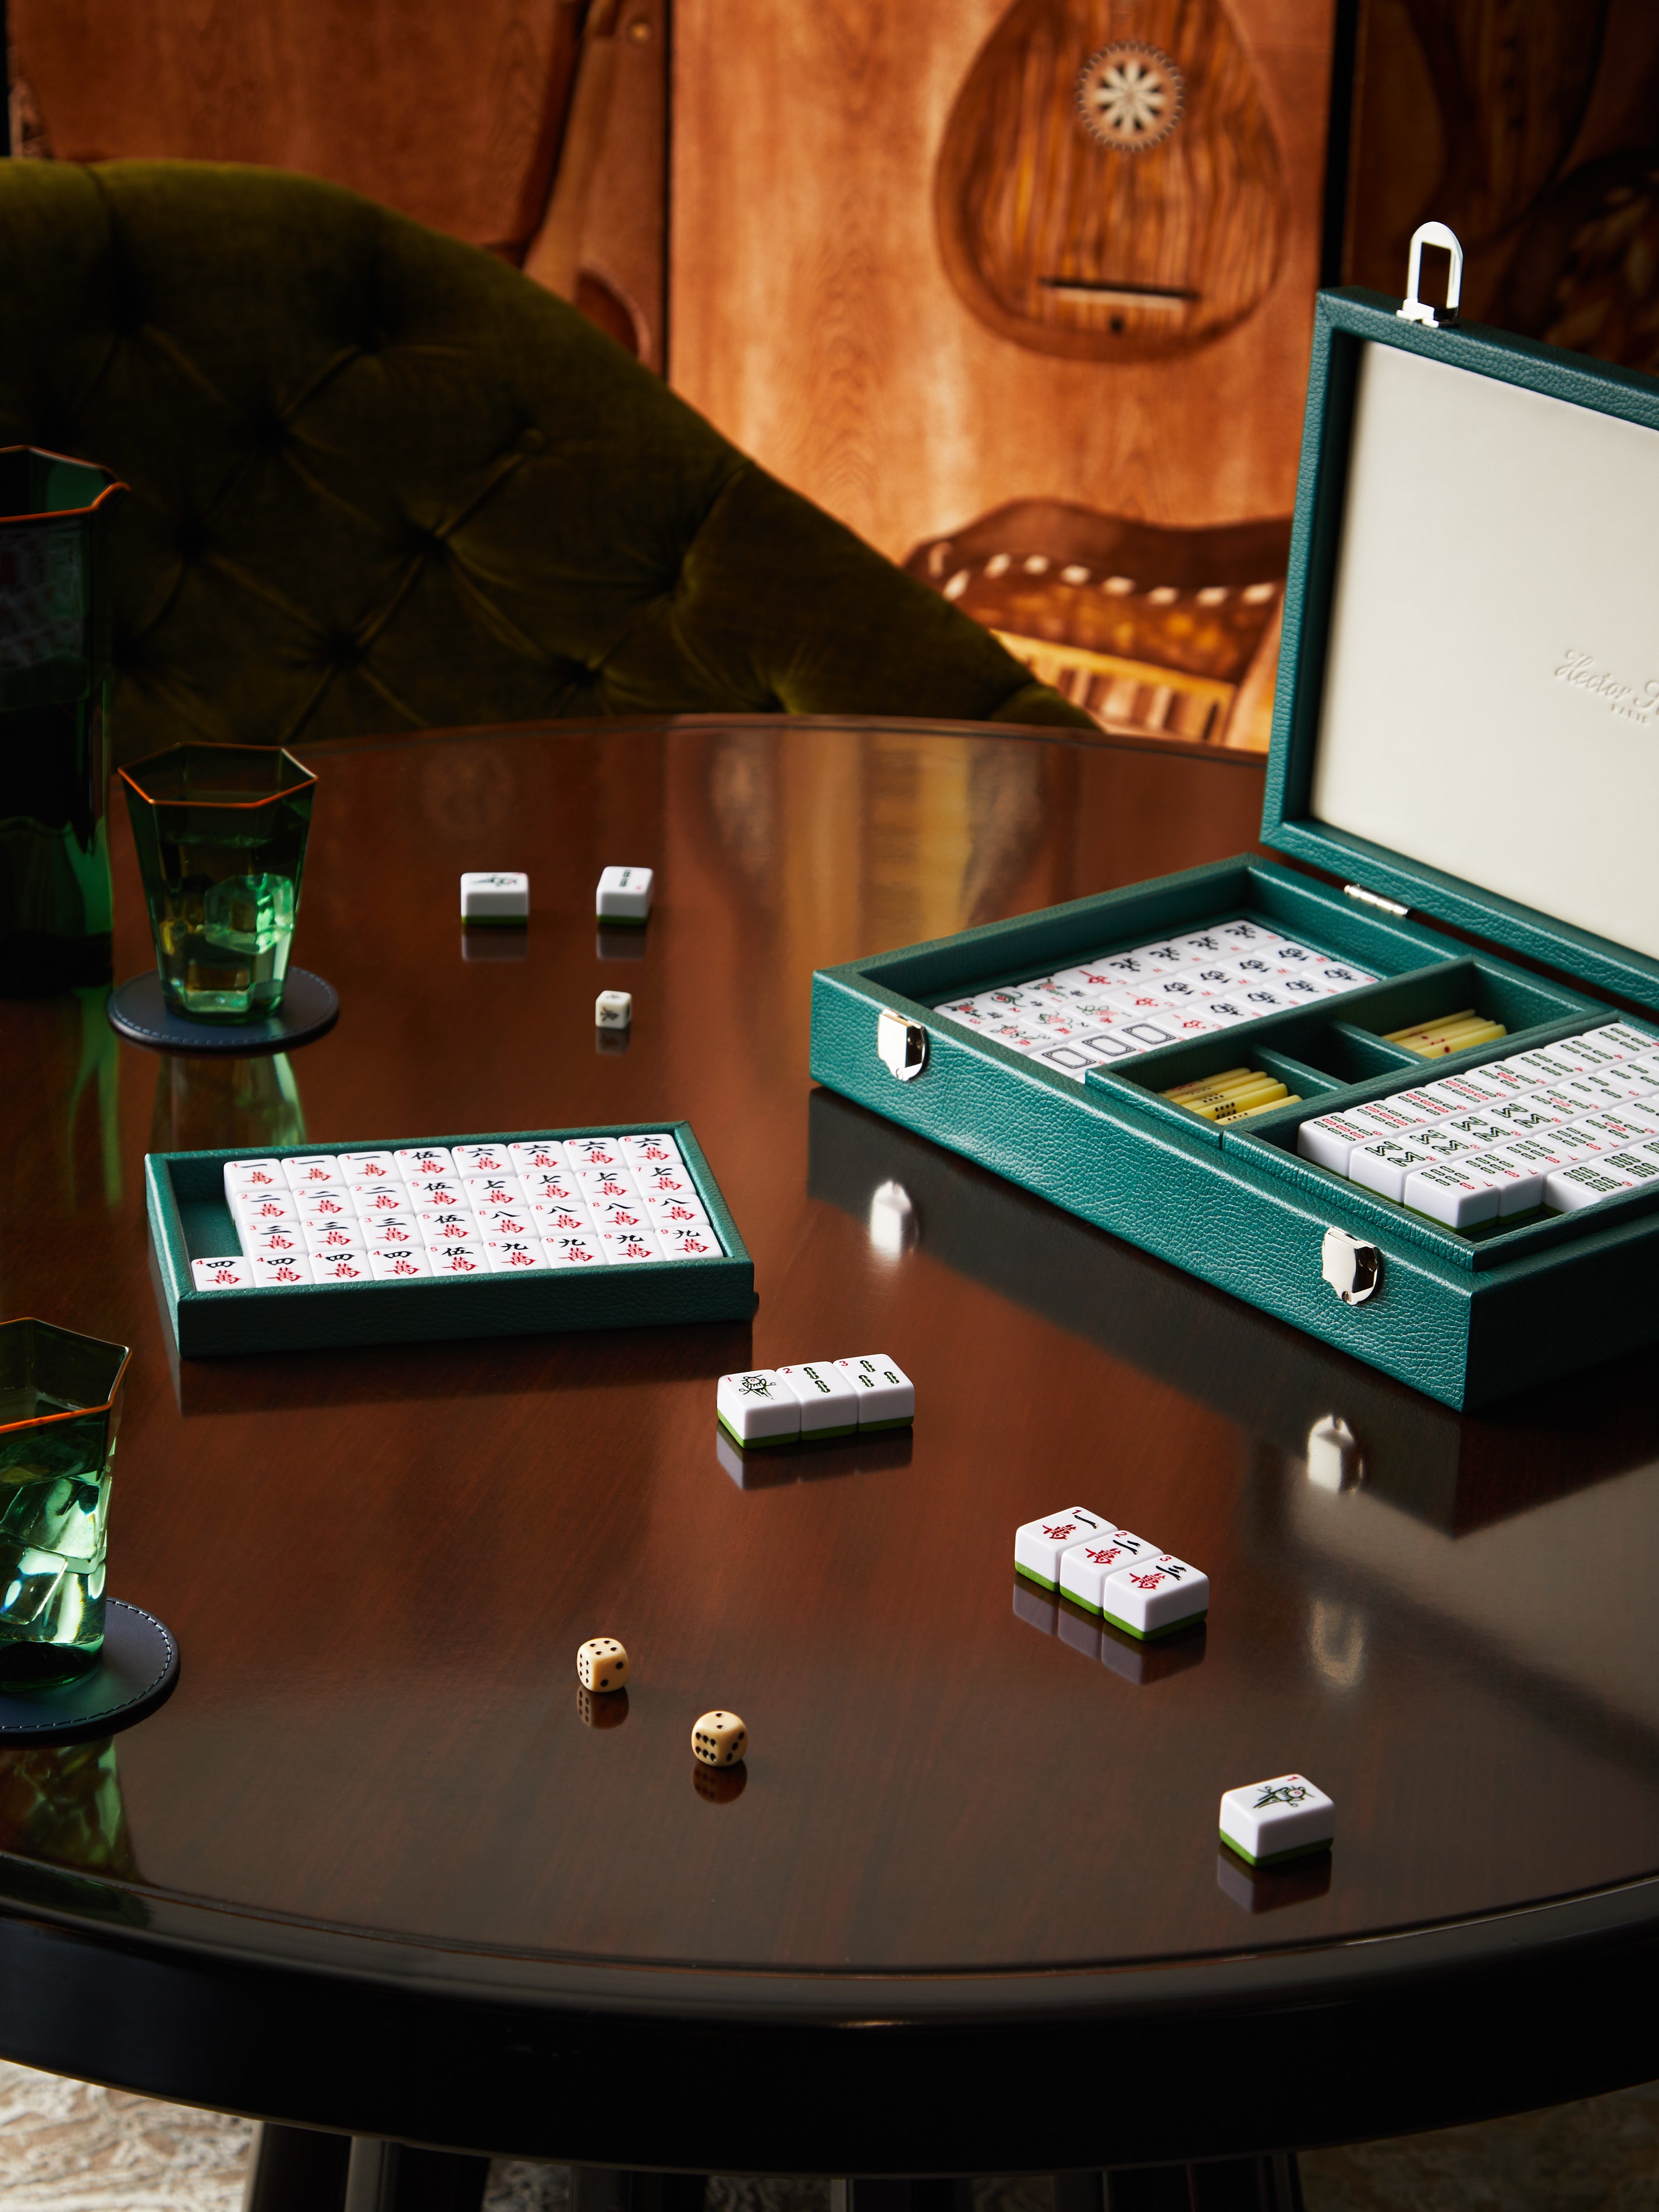 Tiffany & Co faux mahjong set